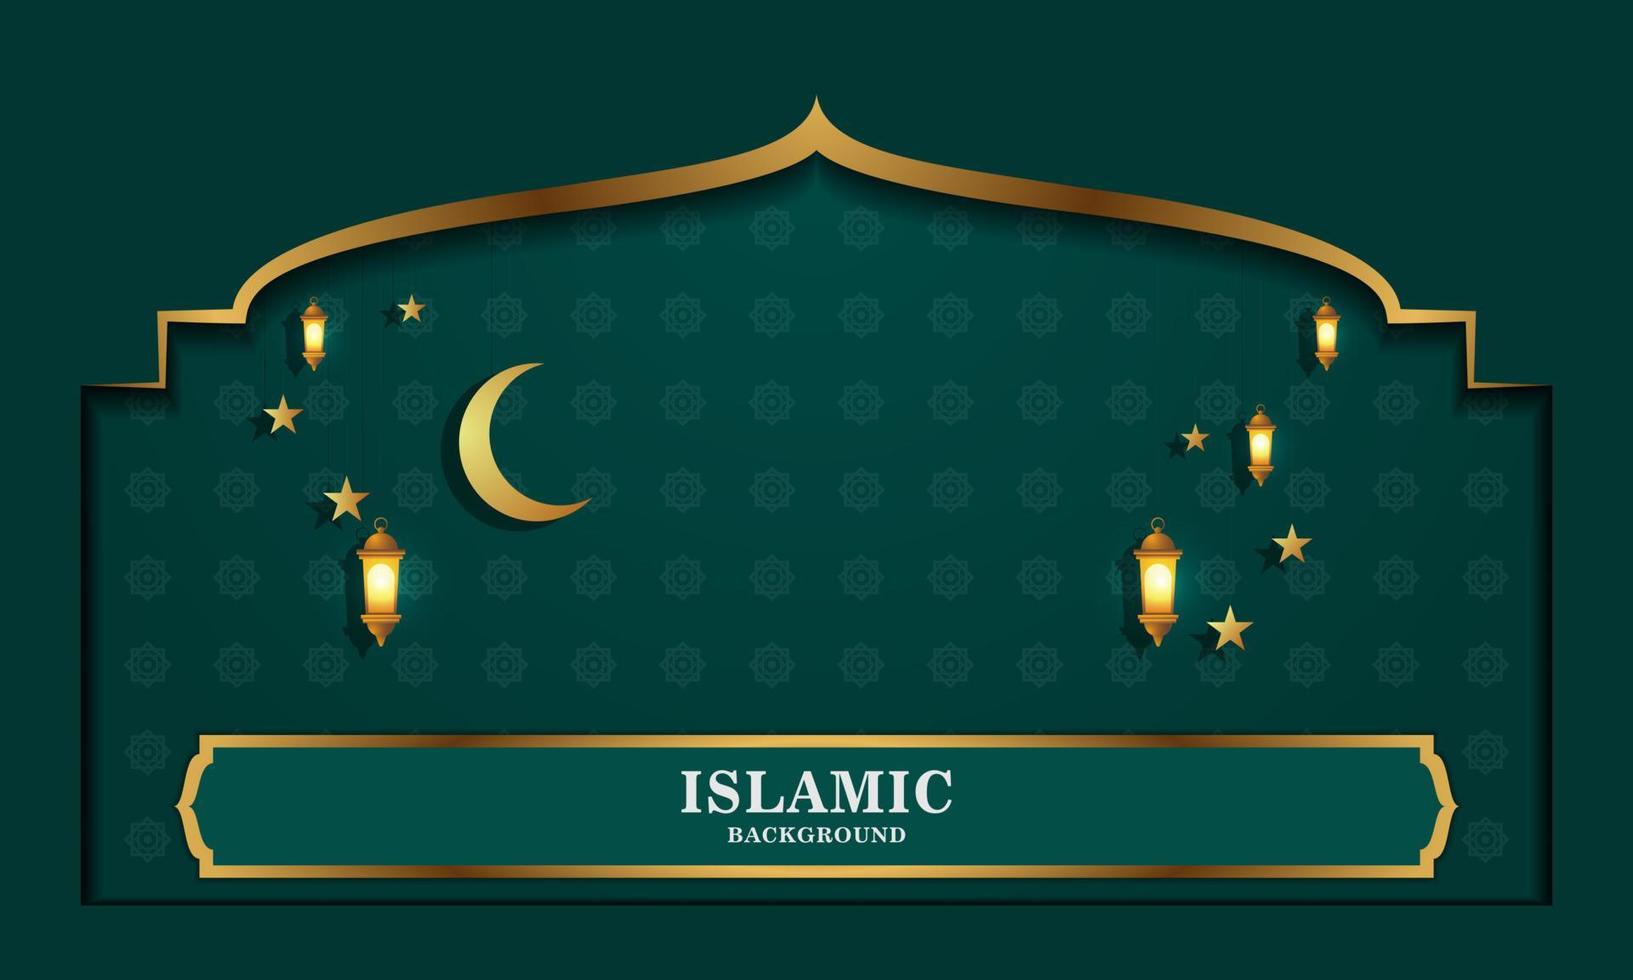 moderner und eleganter grüner islamischer hintergrund mit lichtern und mondsternen vektor